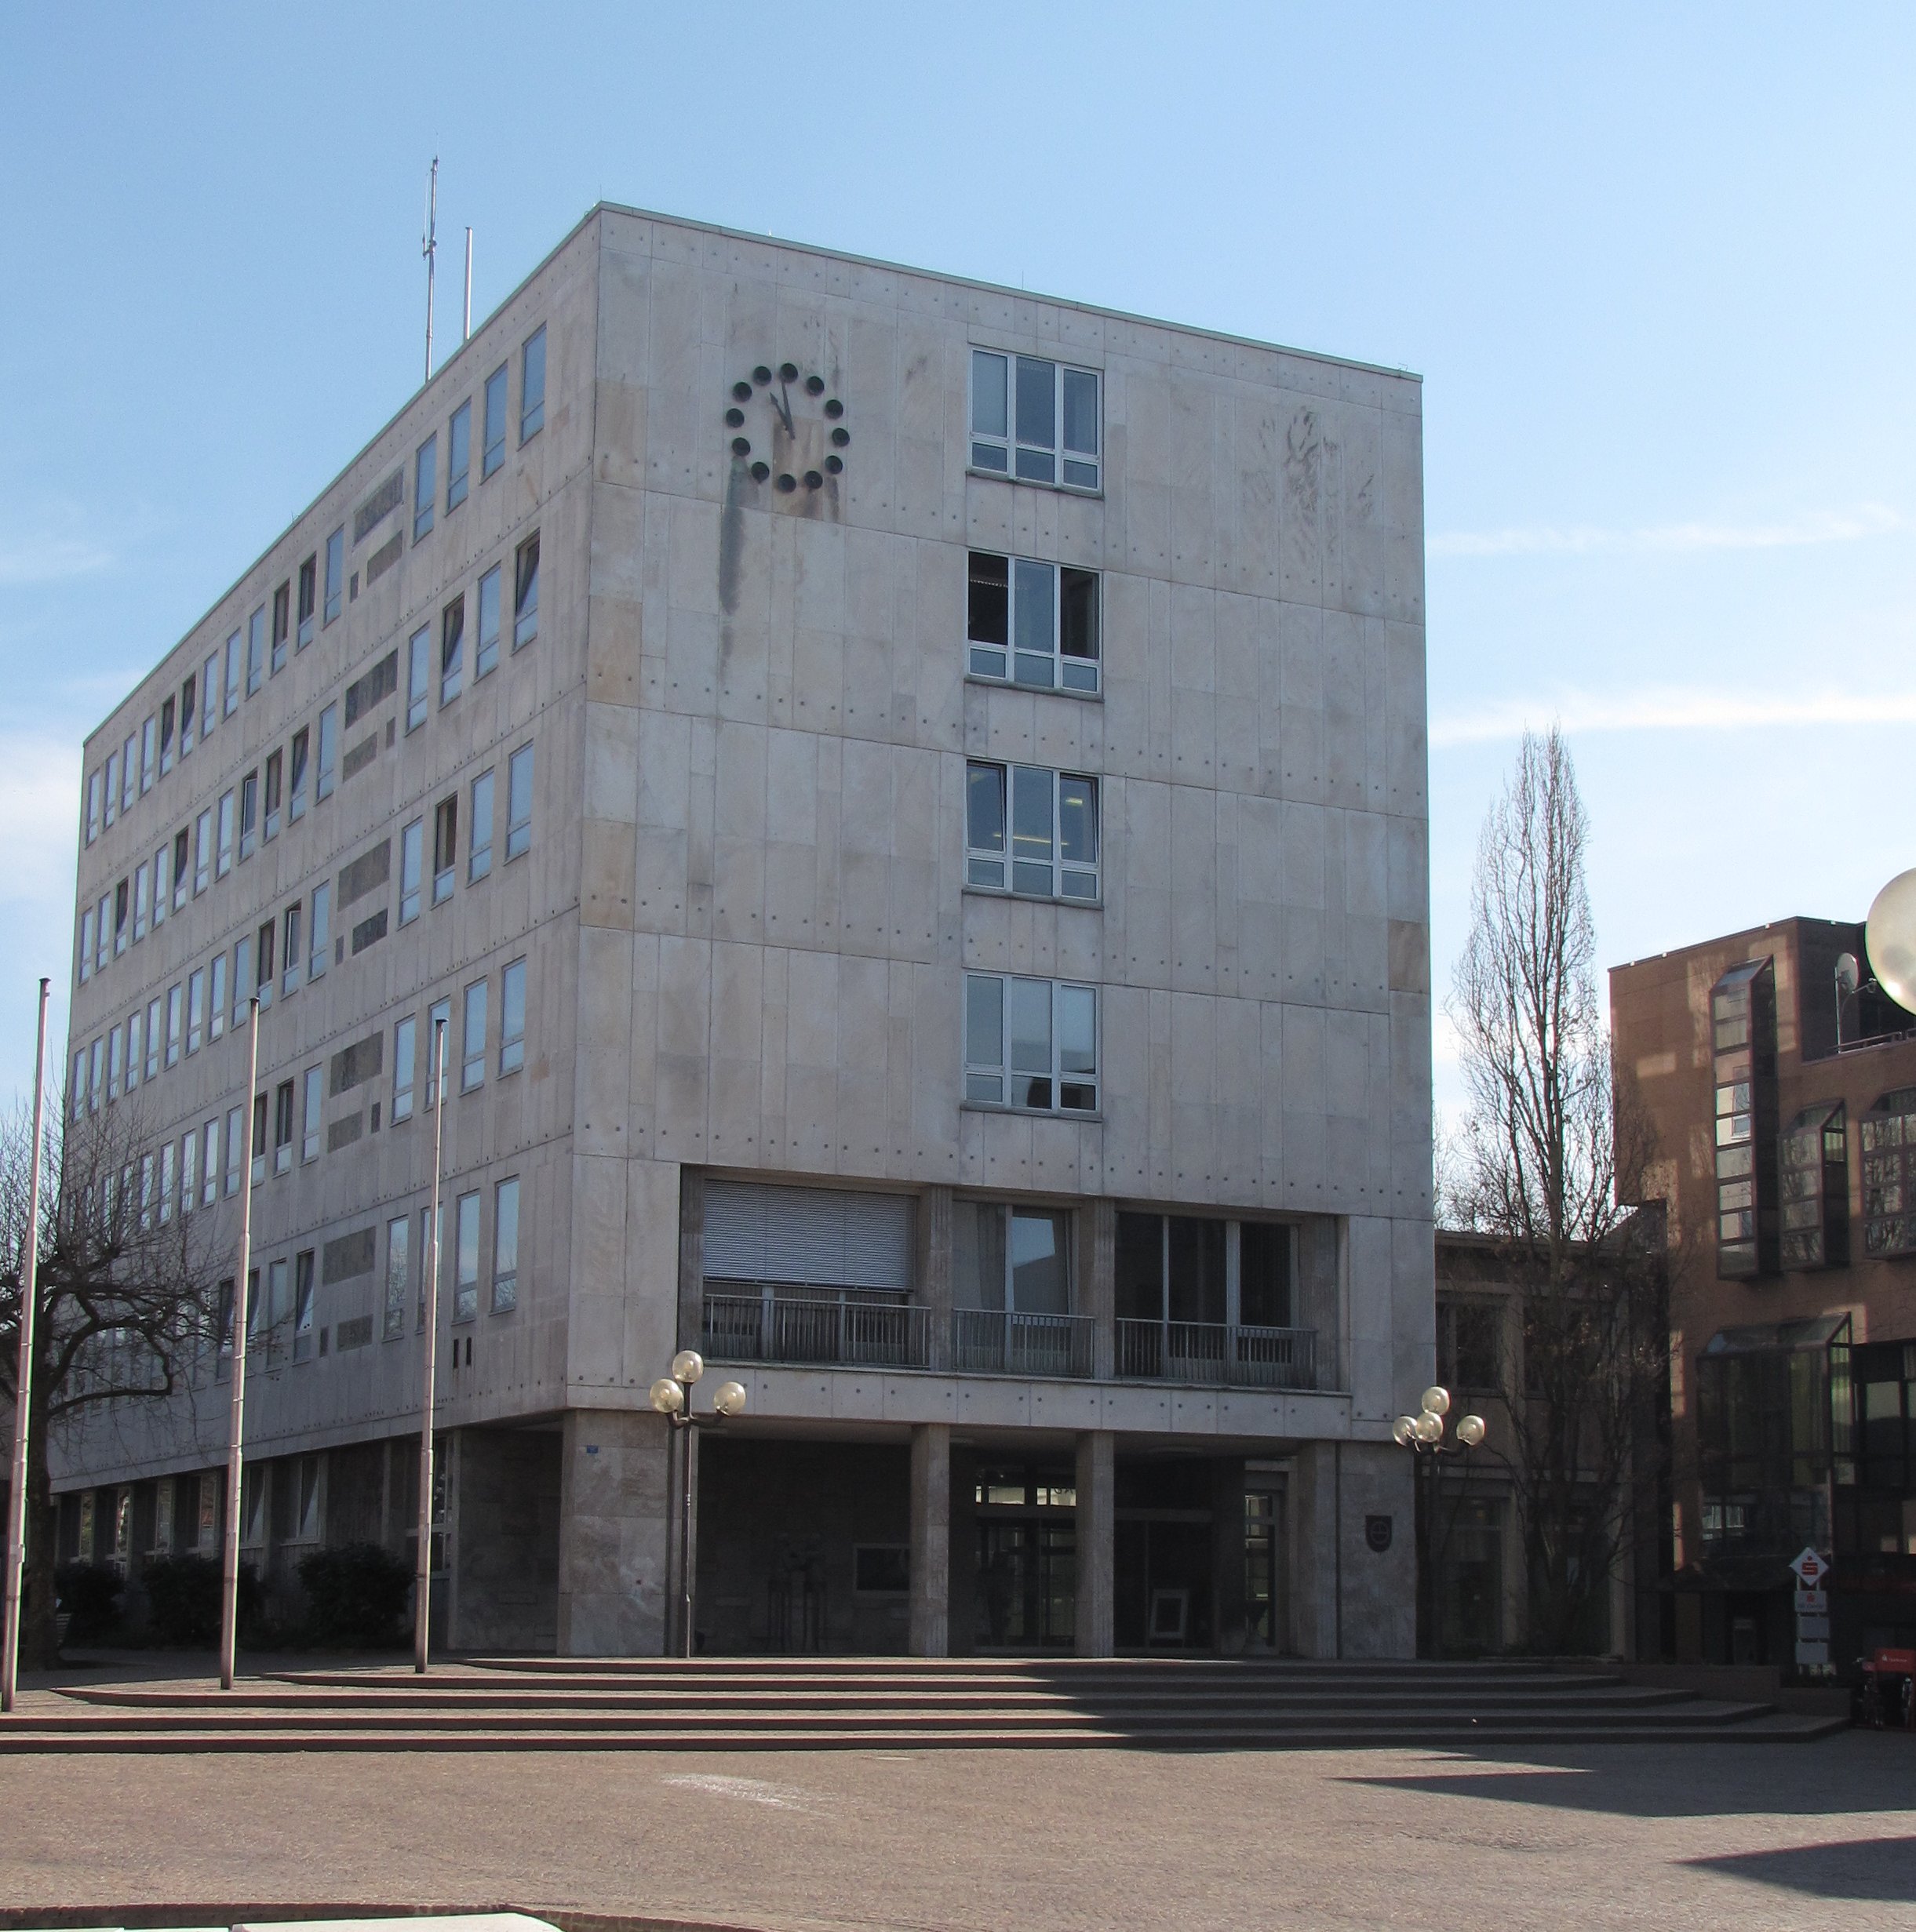 Das Foto zeigt das Rathaus in Gaggenau, wo sich die Kfz-Zulassungsbehörde befindet